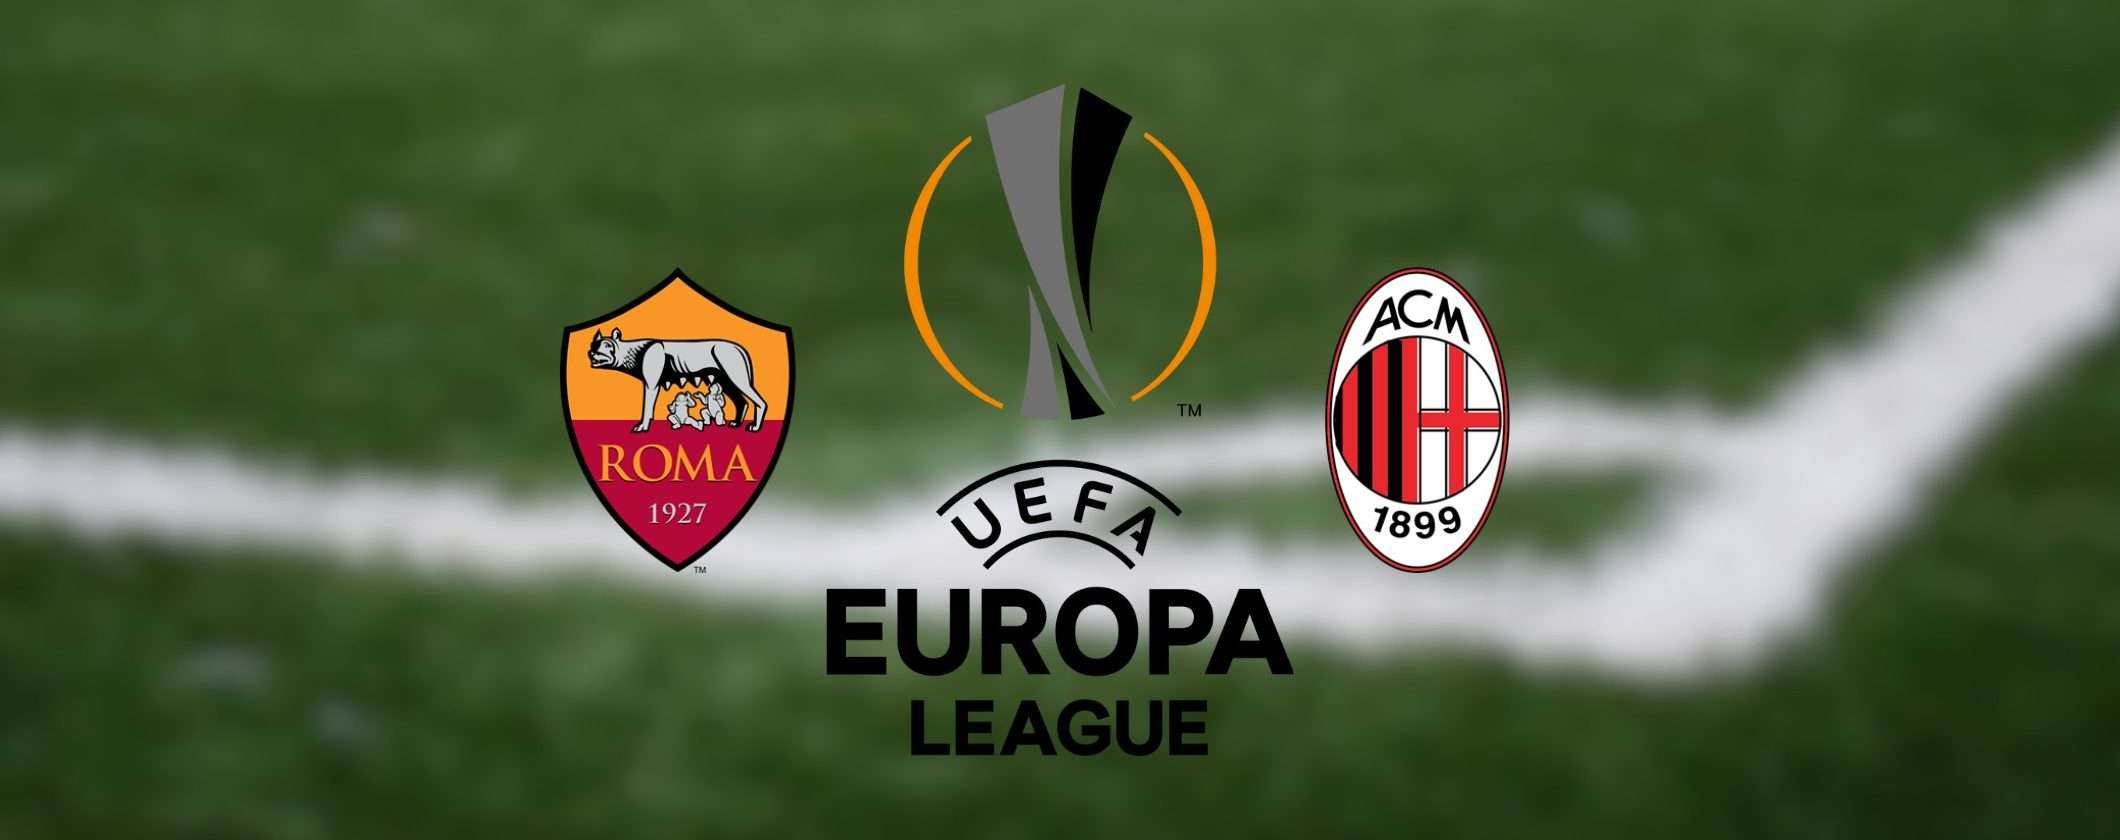 Milan-Roma: come vedere il derby italiano in diretta streaming dall'estero